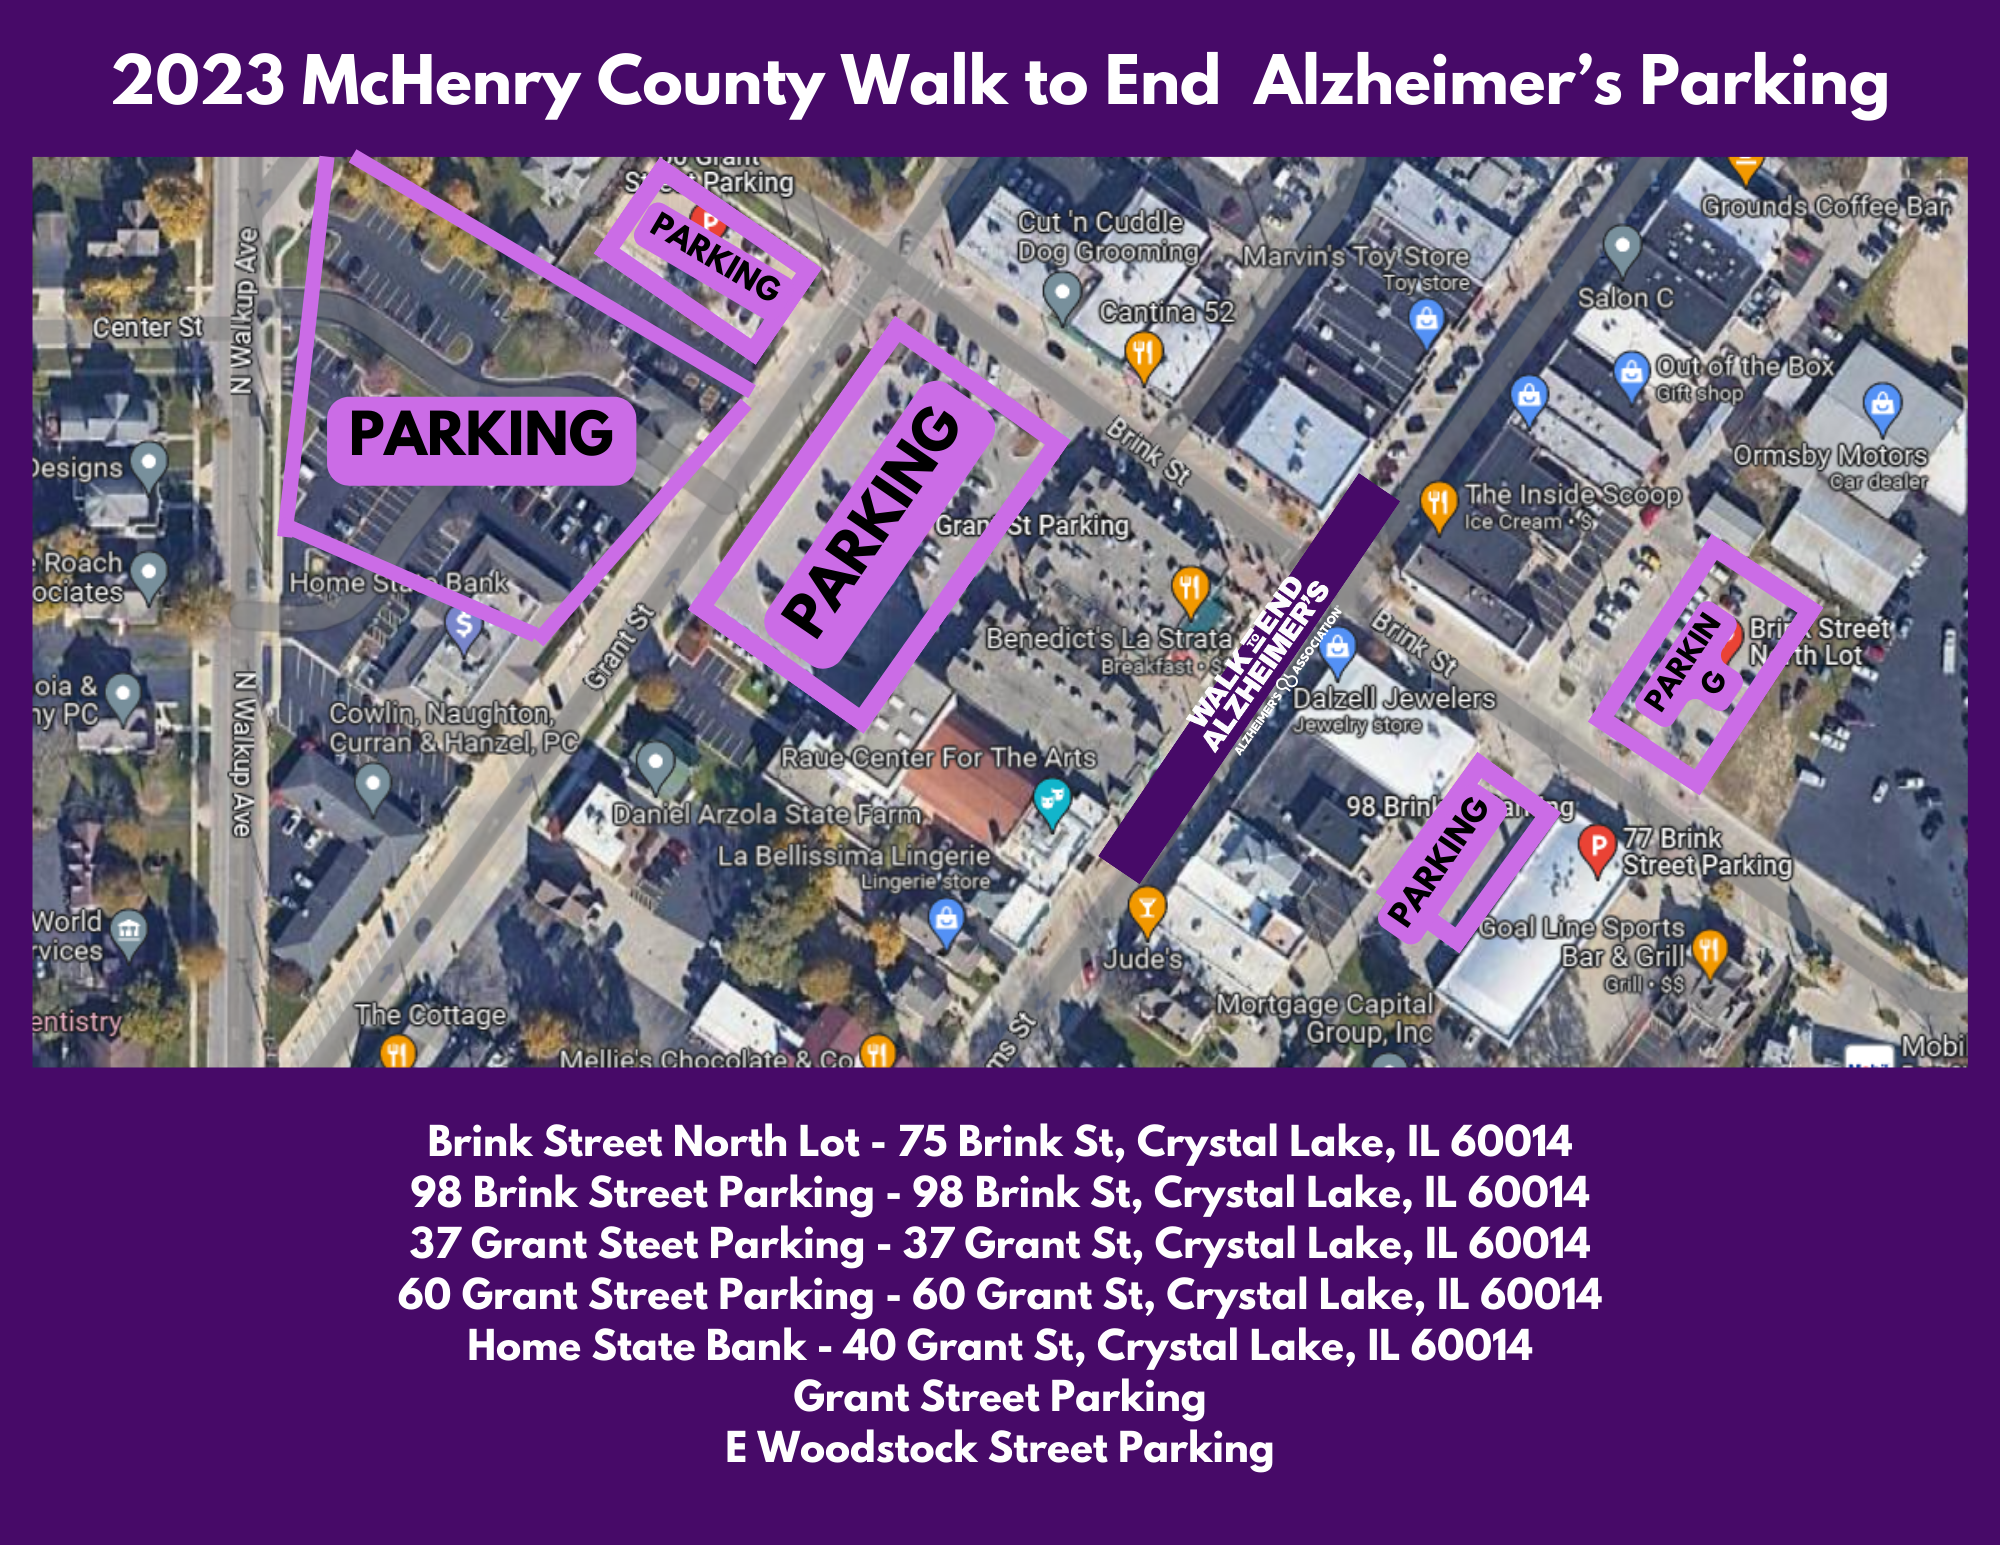 2023 Mapa de configuración de la ruta de la caminata para acabar con el Alzheimer del condado de McHenry.